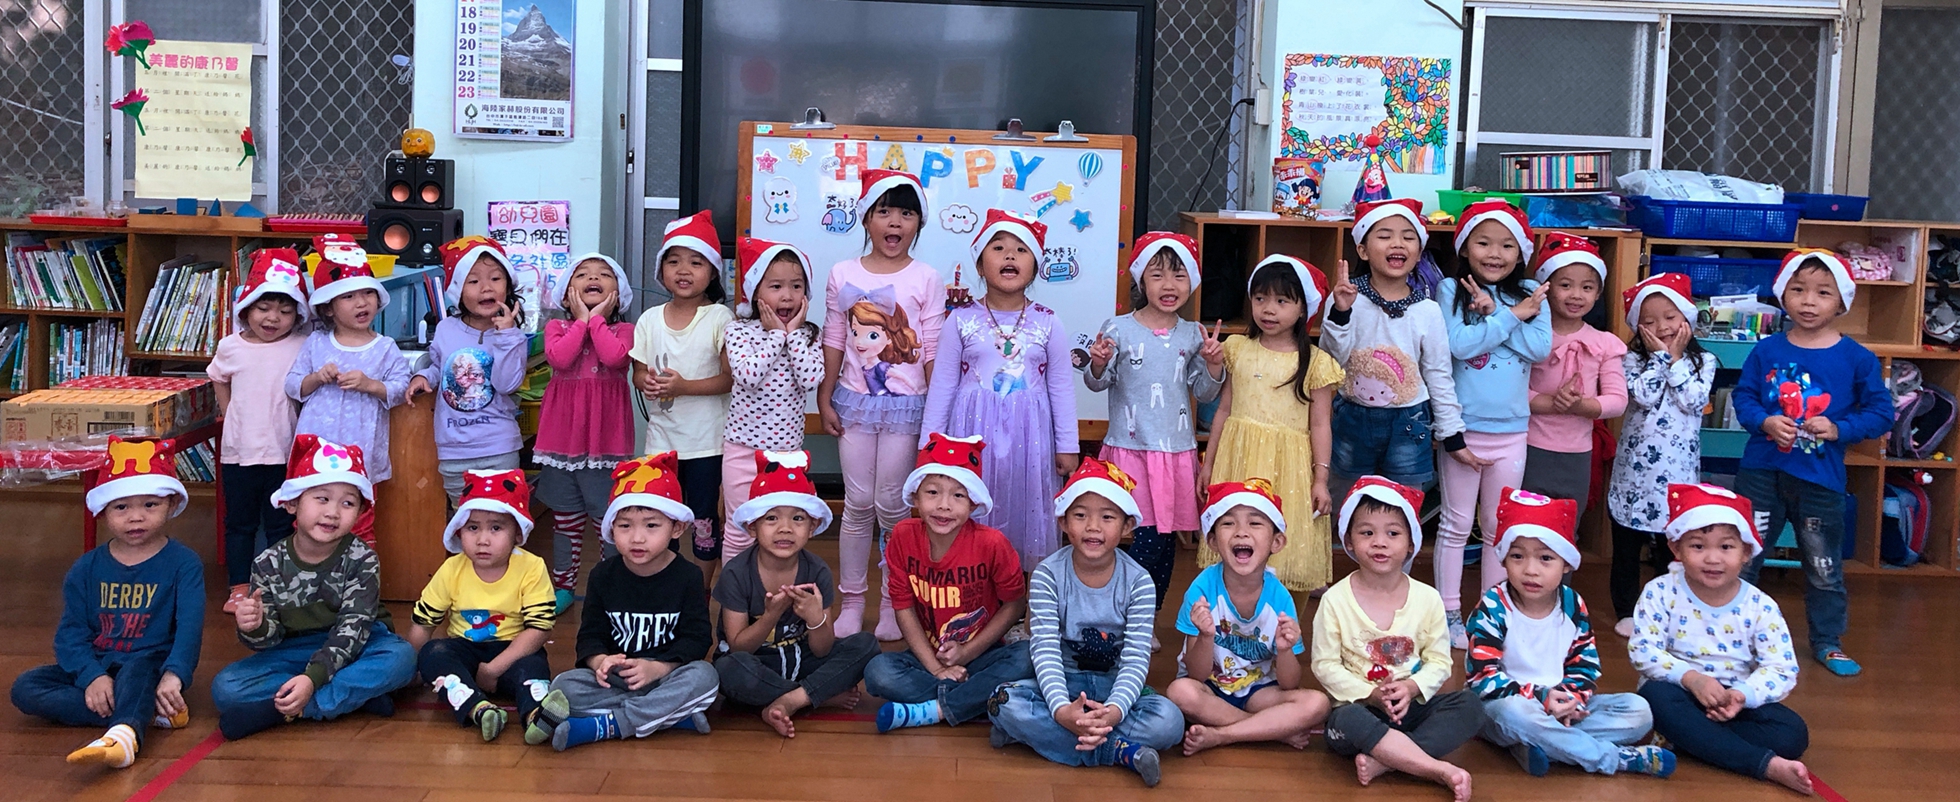 幼兒園配合聖誕節活動製作聖誕帽